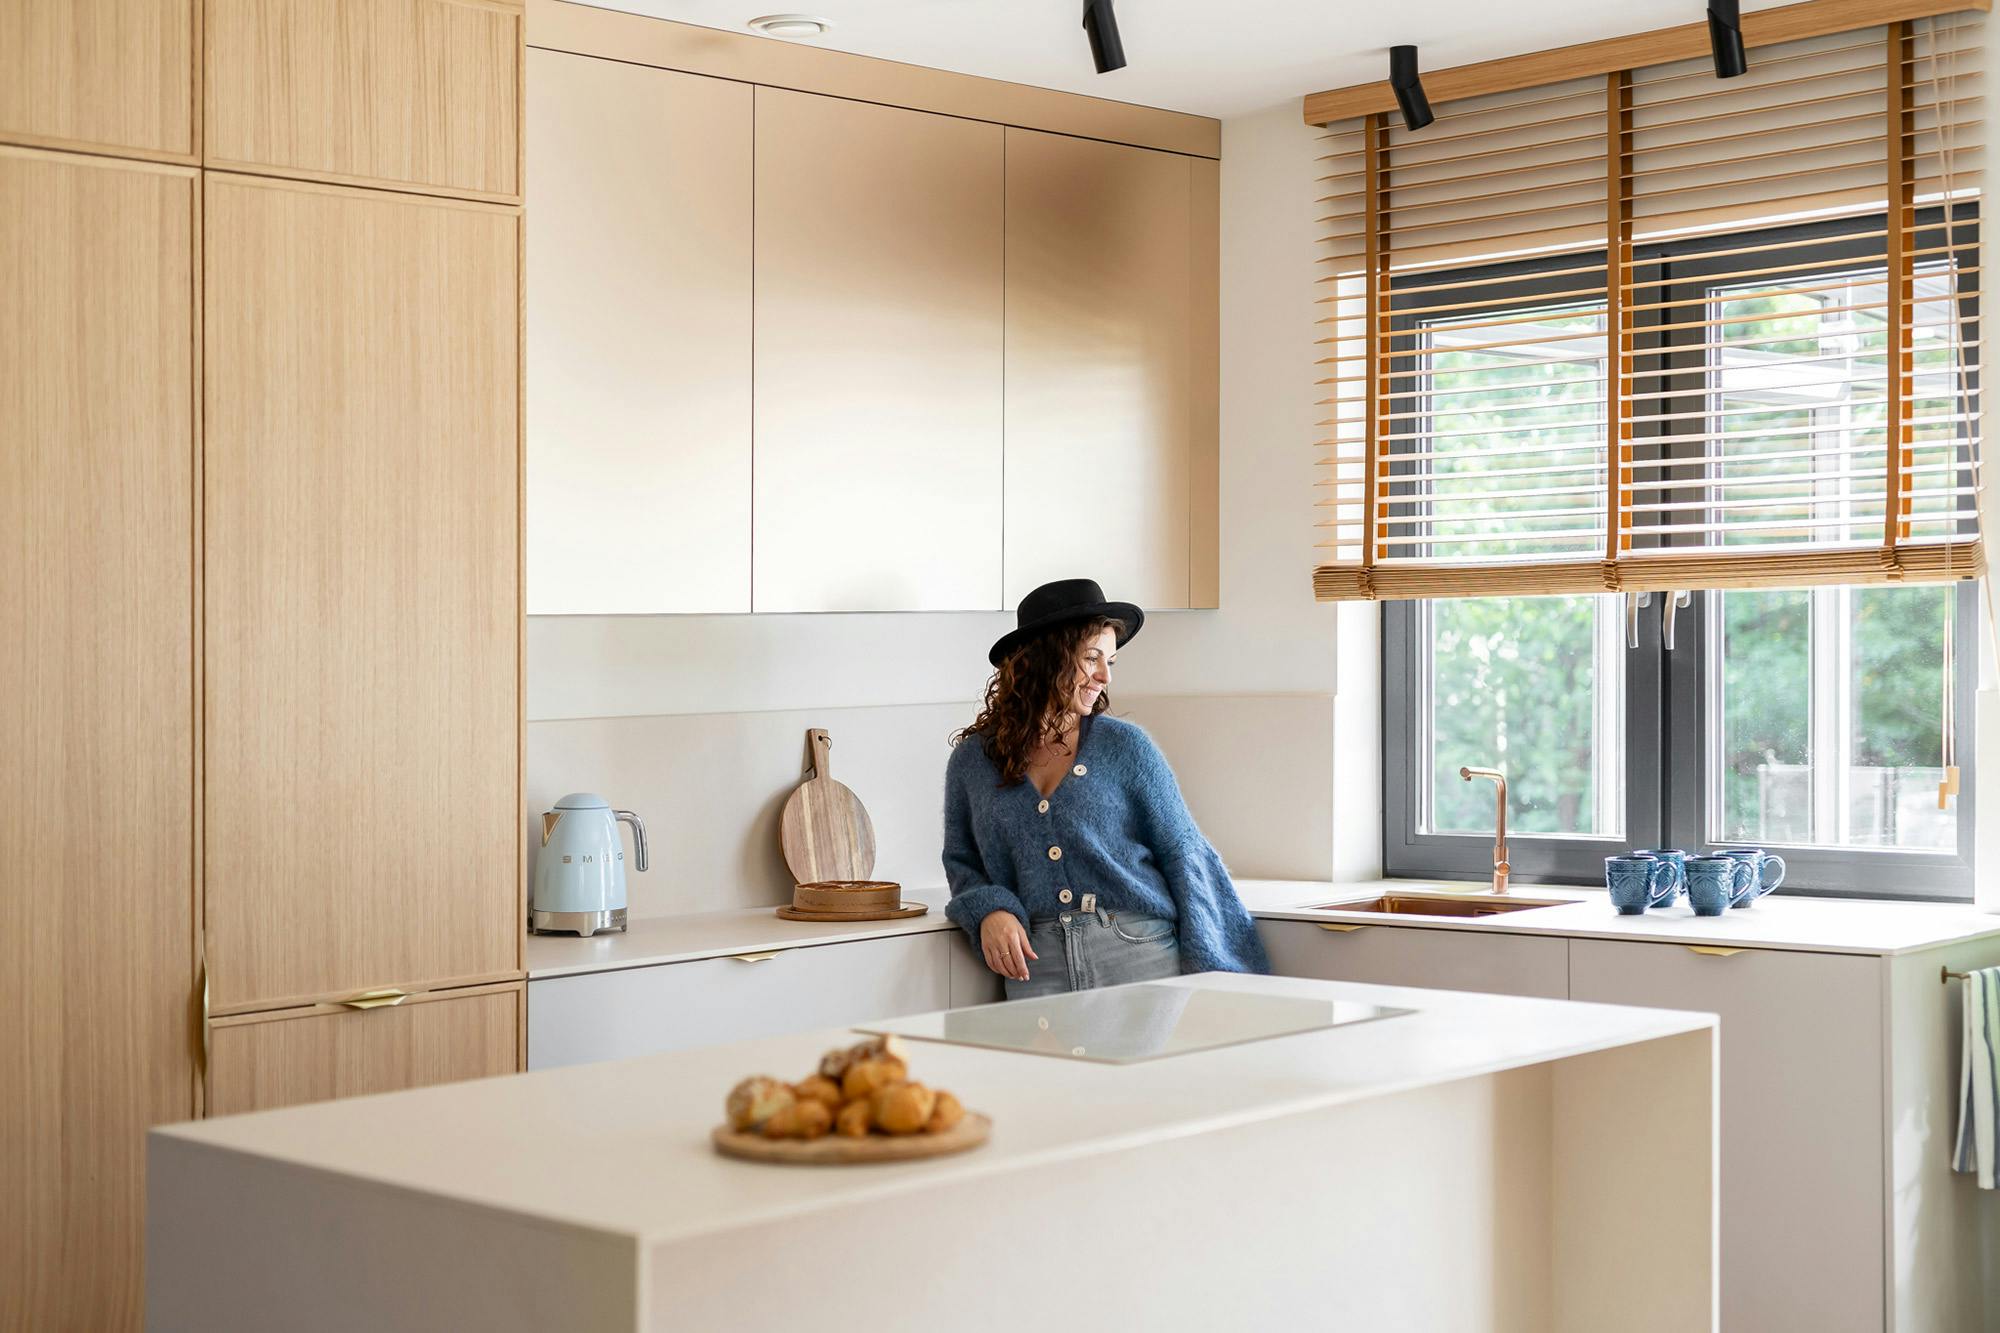 Numero immagine 37 della sezione corrente di Architect Pils Ferrer chooses DKTN for the renovation of her home, where the kitchen speaks for itself di Cosentino Italia